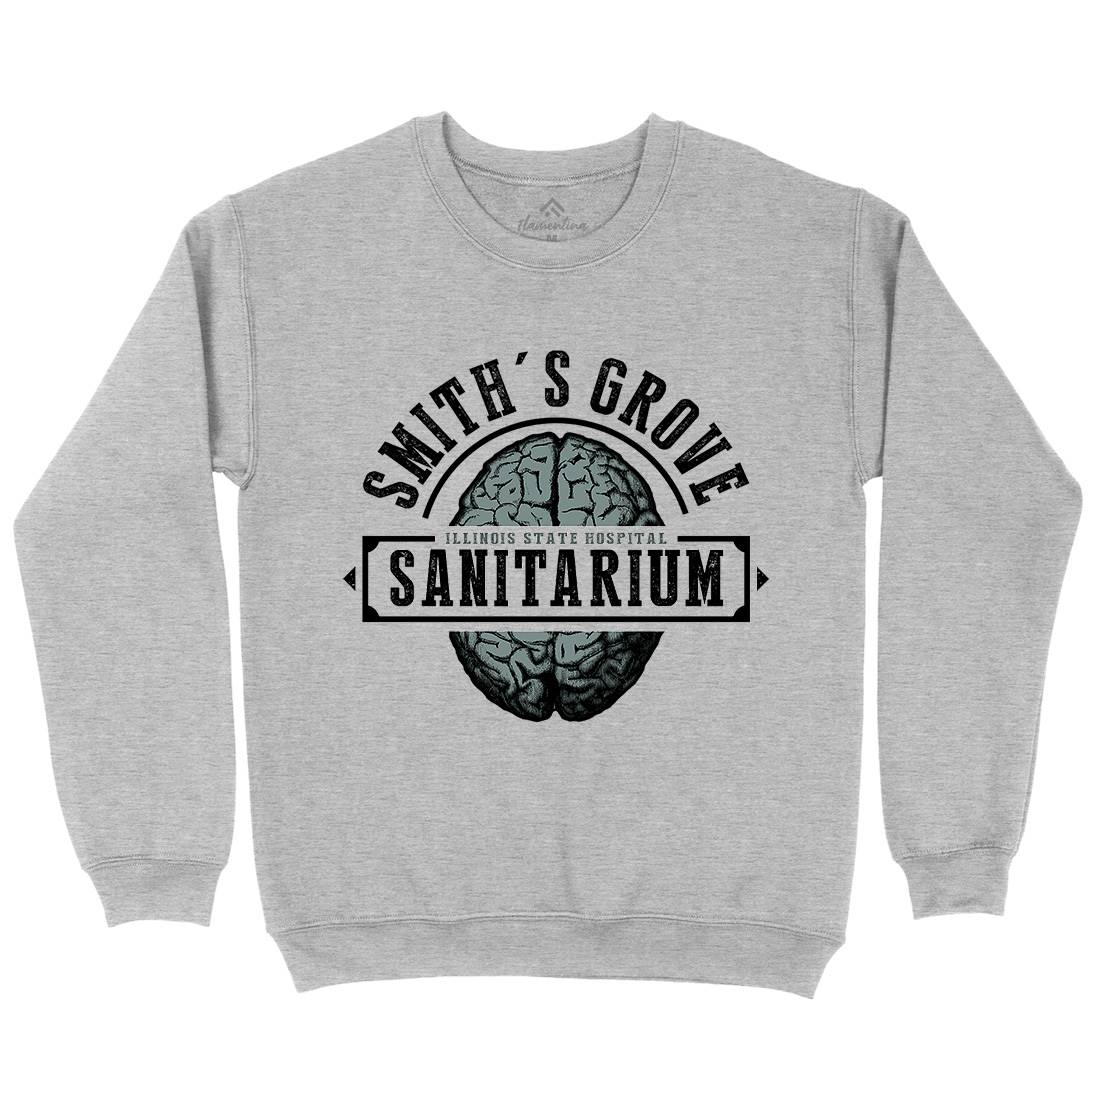 Smiths Grove Kids Crew Neck Sweatshirt Horror D331